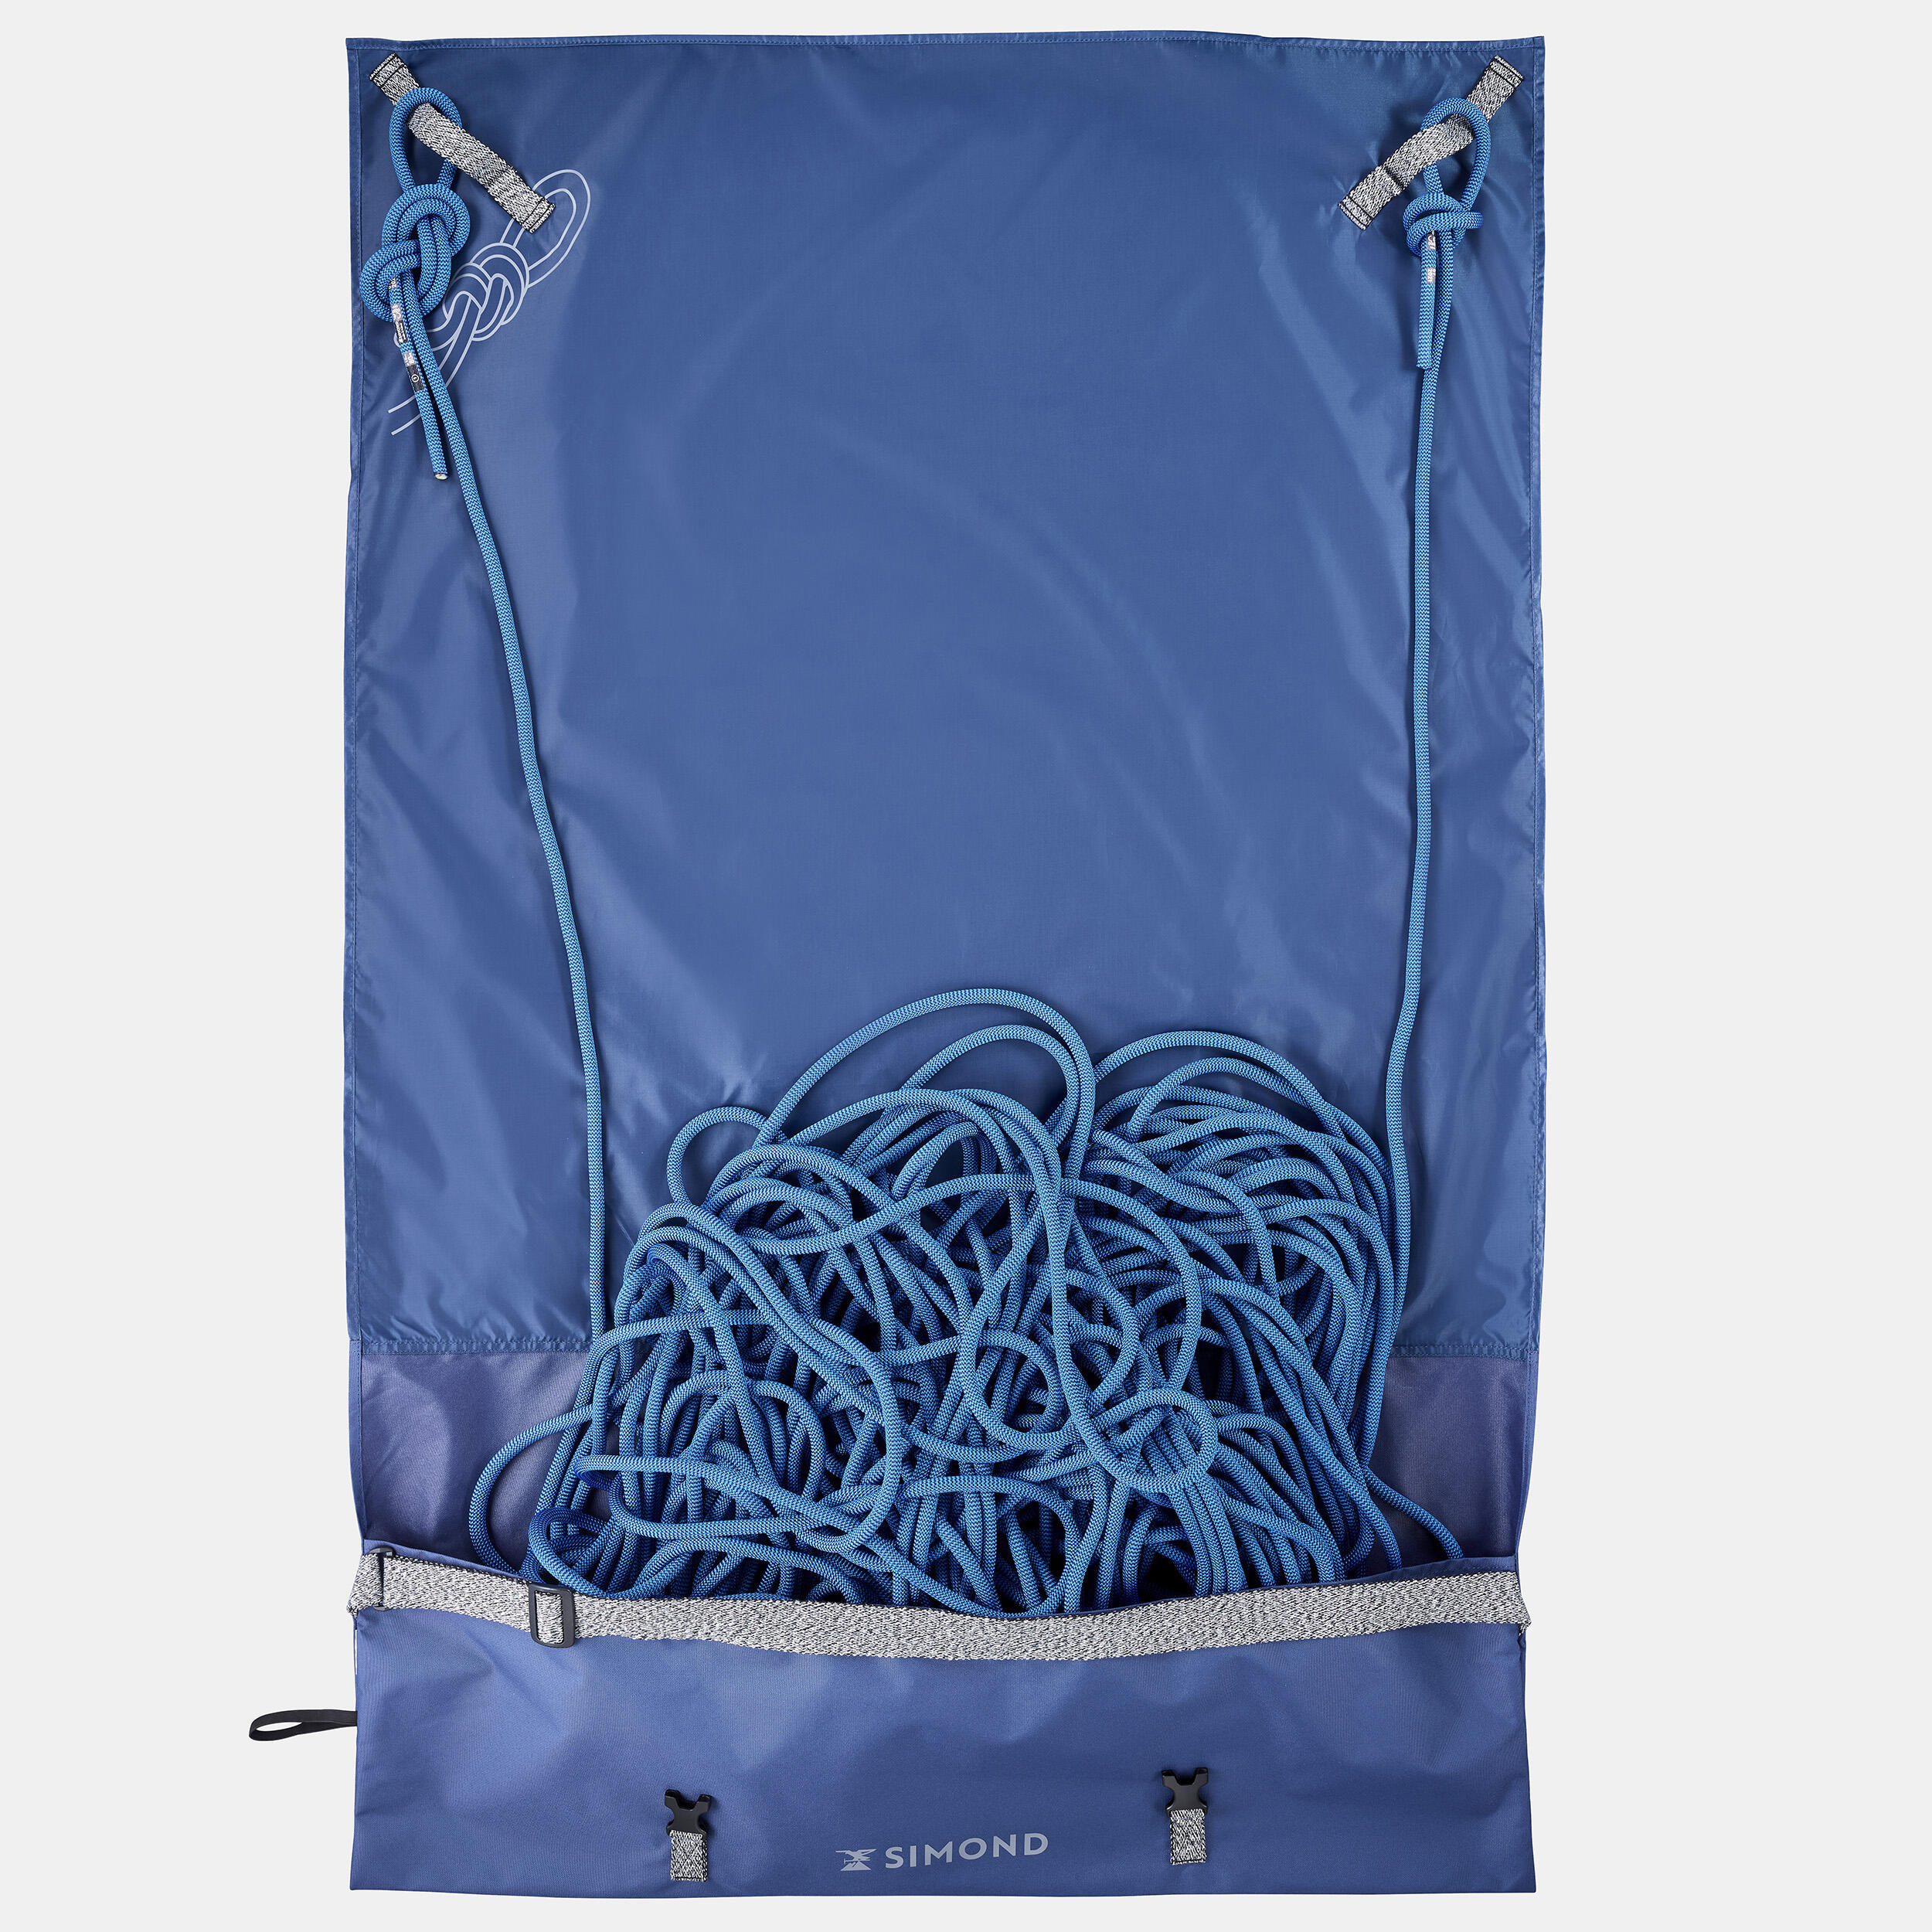 Cuerda escalada 10mm por 1 metro color azul marino